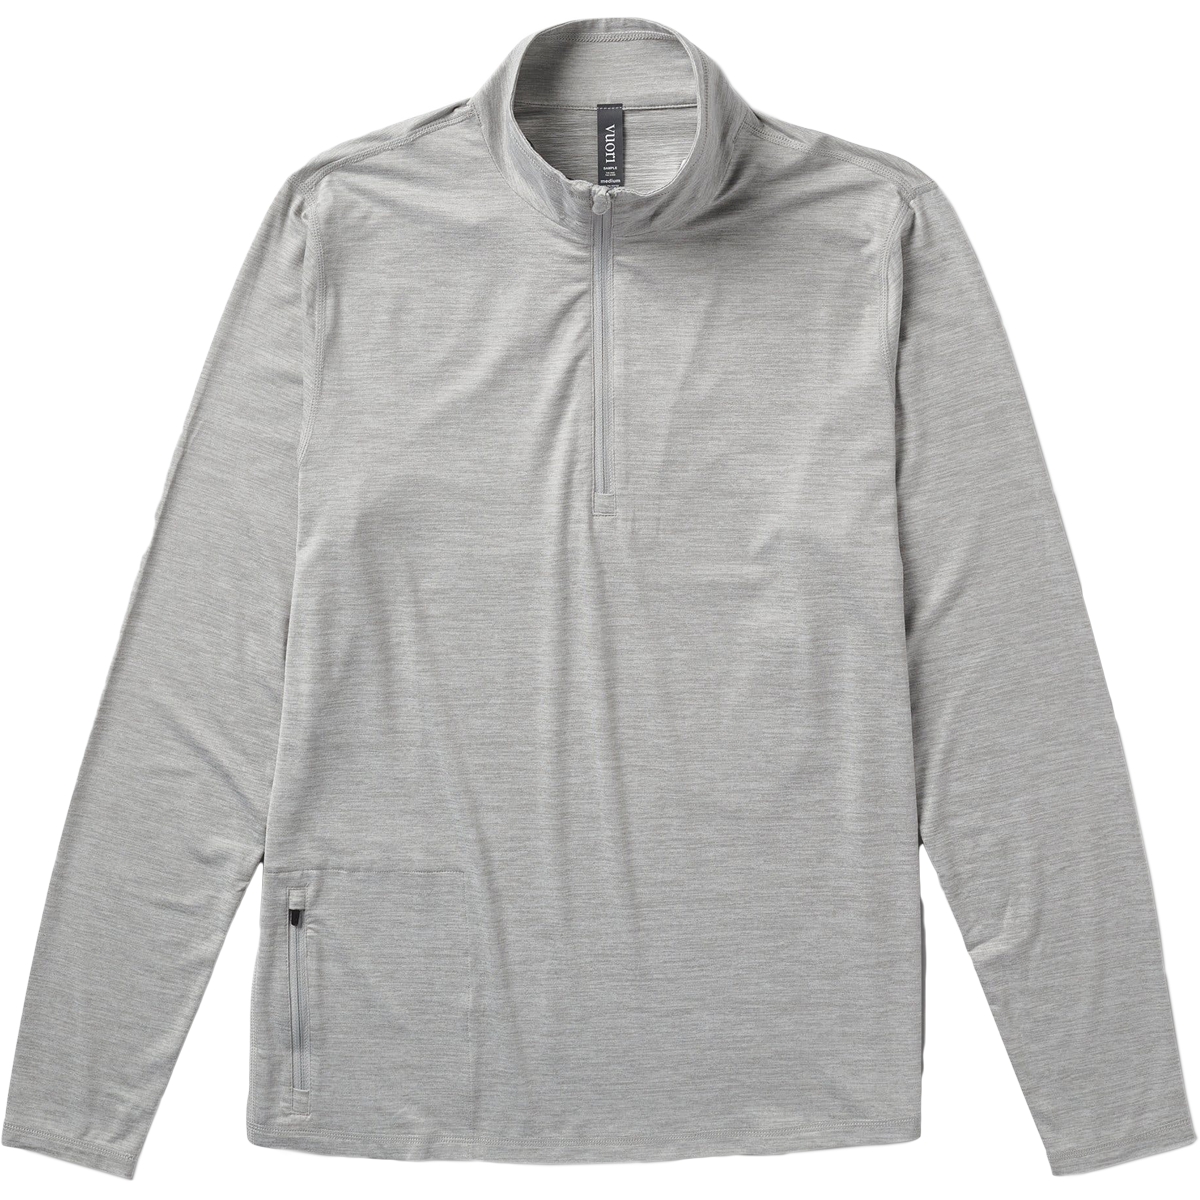 Men's Compression 1/4 Zipper Shirt Mock Neck Short Sleeve Top Cool